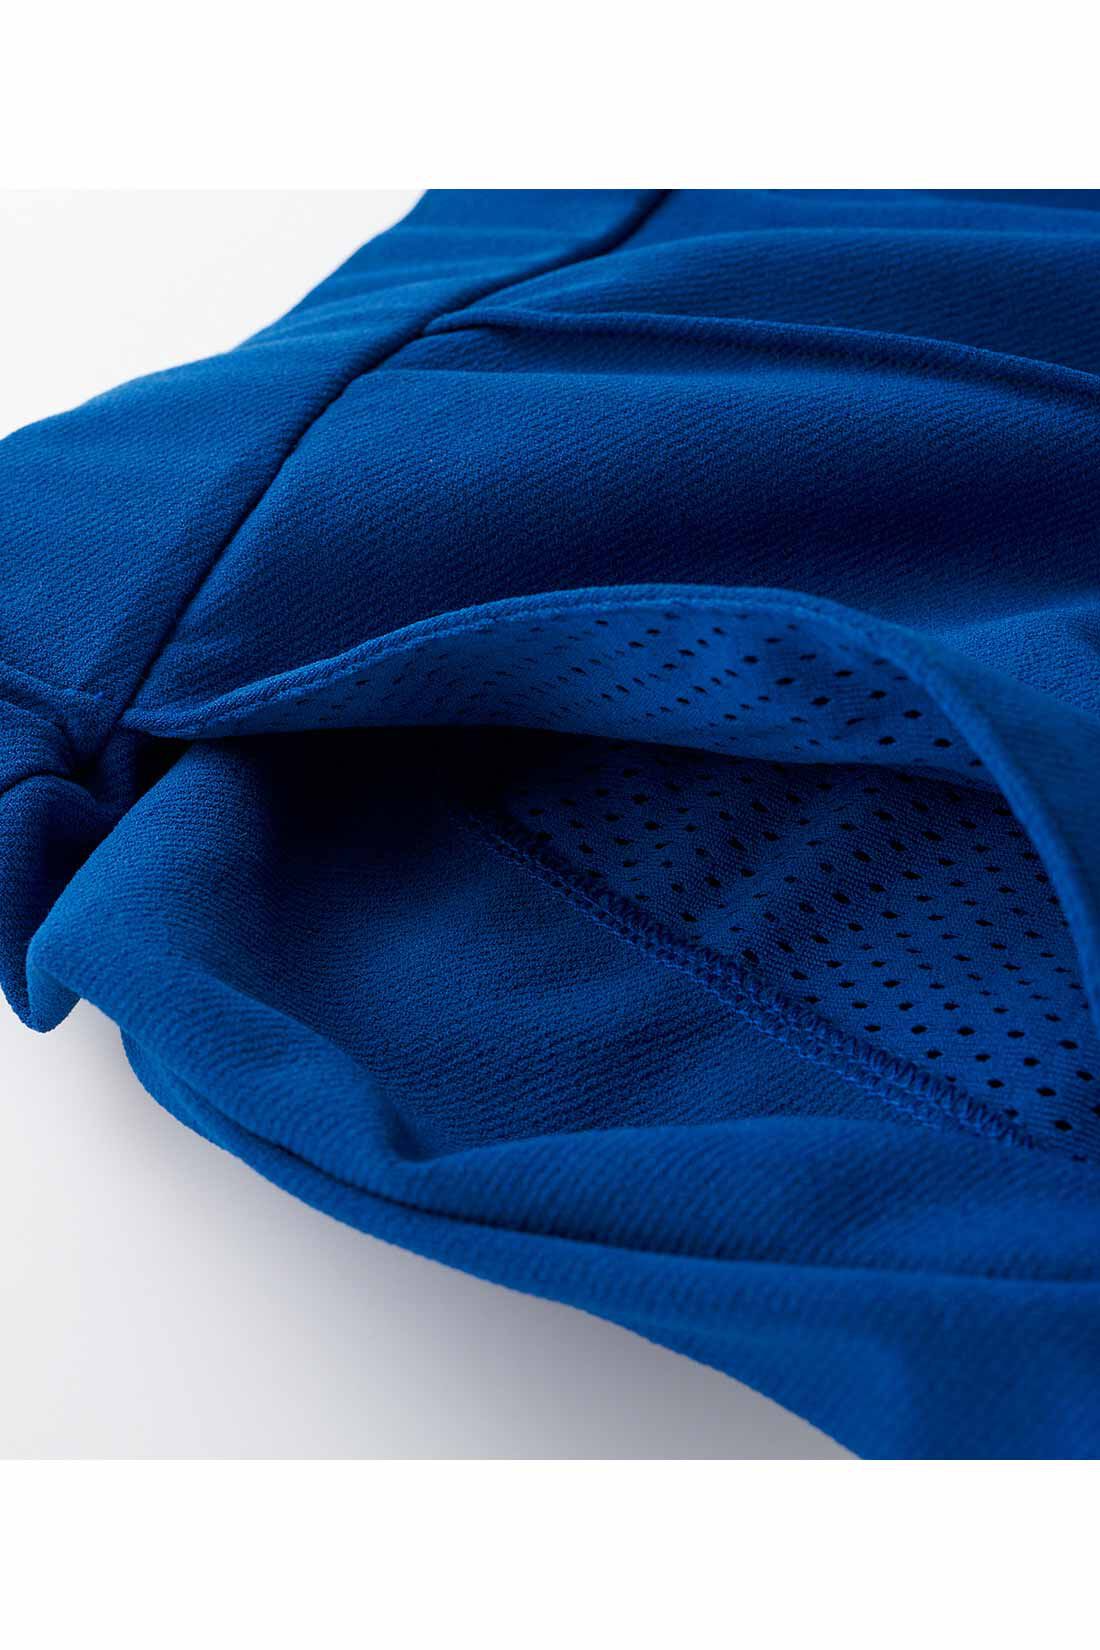 Live in  comfort|リブ イン コンフォート アクティブに動ける！ 吸汗速乾＆抗菌防臭素材のセンタータックパンツ 〈ブラック〉|ポケット布はメッシュ素材だから風が通って涼やか。